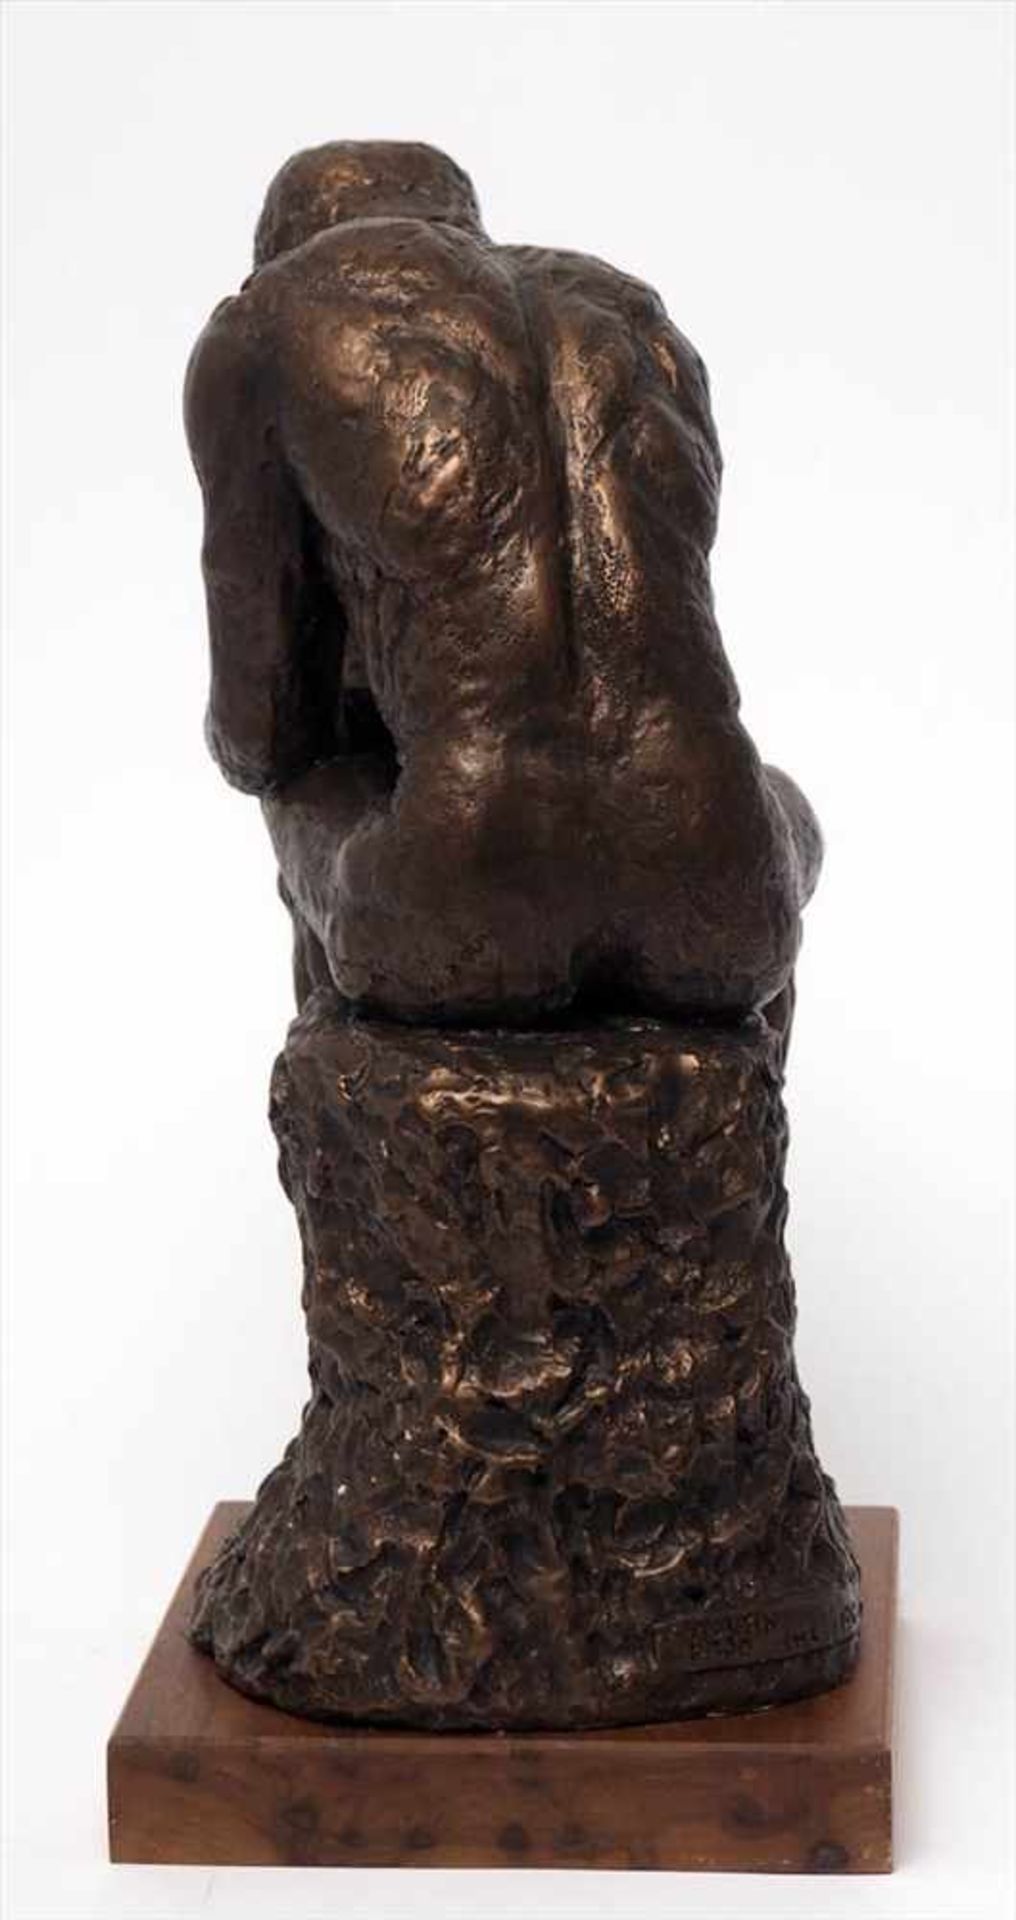 Museumsreplik"Der Denker" nach Rodin. Gips, bronziert, auf Holzsockel. H.40cm. - Bild 4 aus 6